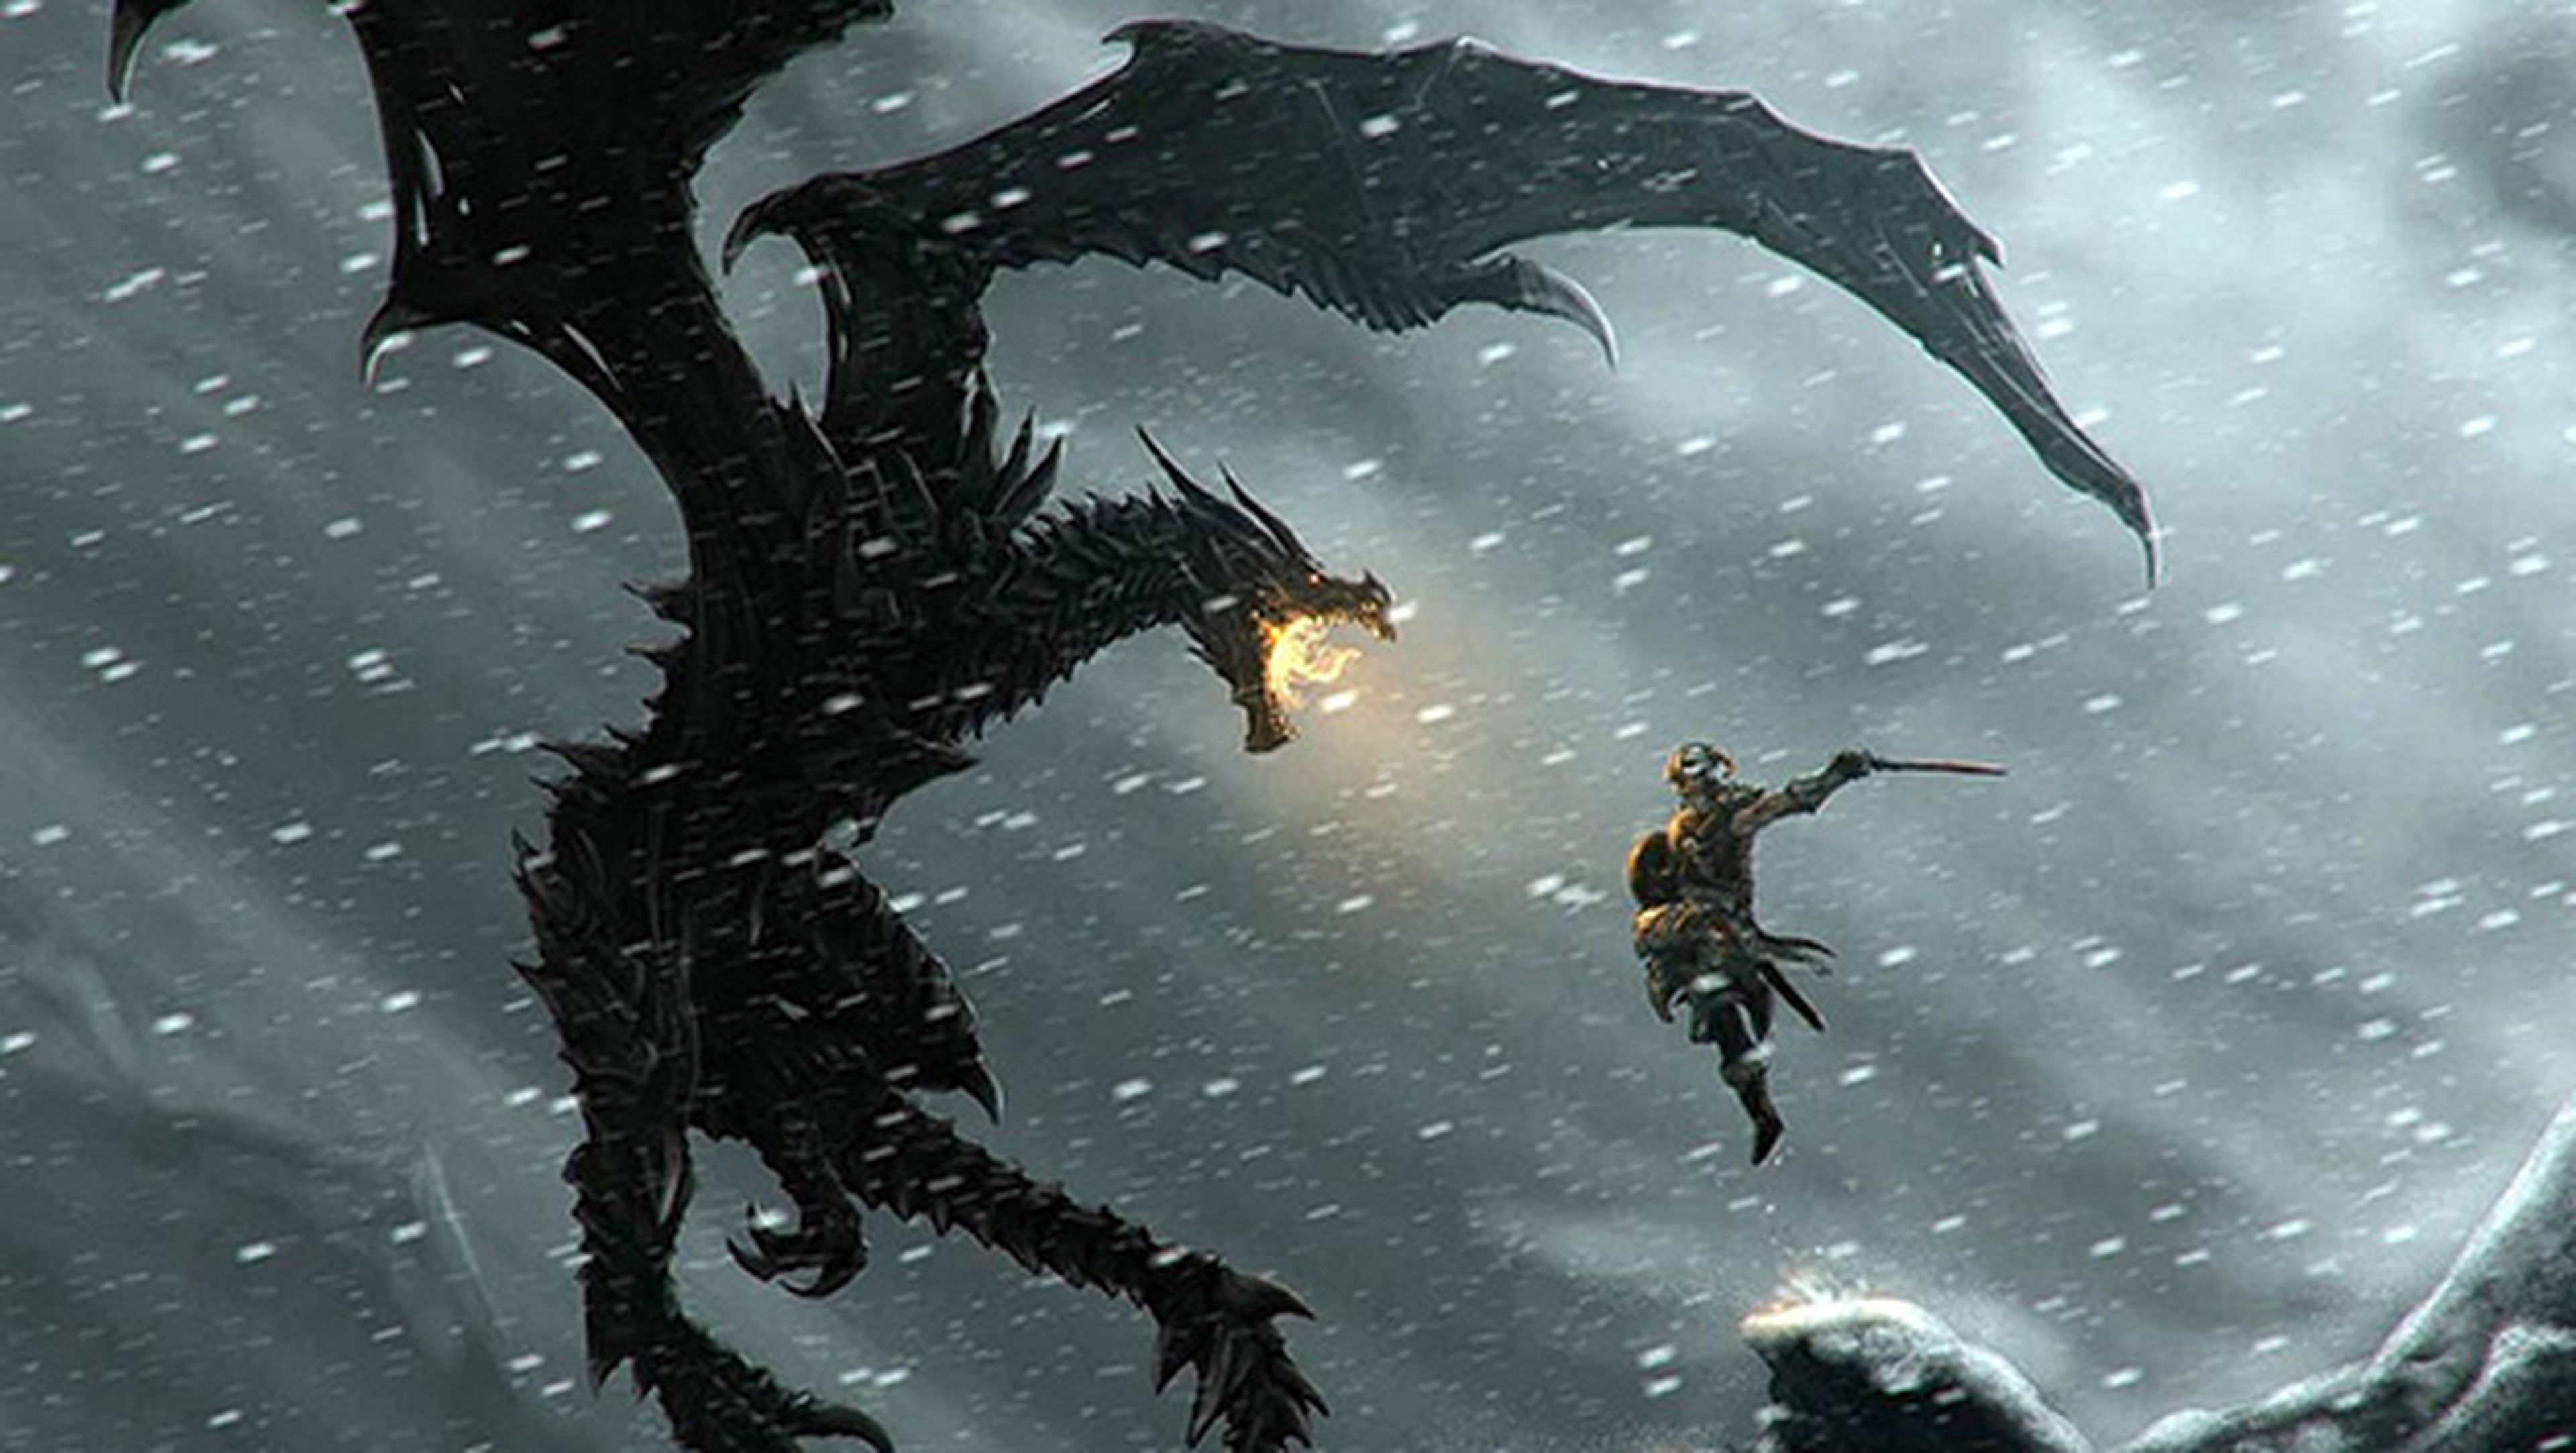 Juega gratis a The Elder Scrolls V: Skyrim este fin de semana